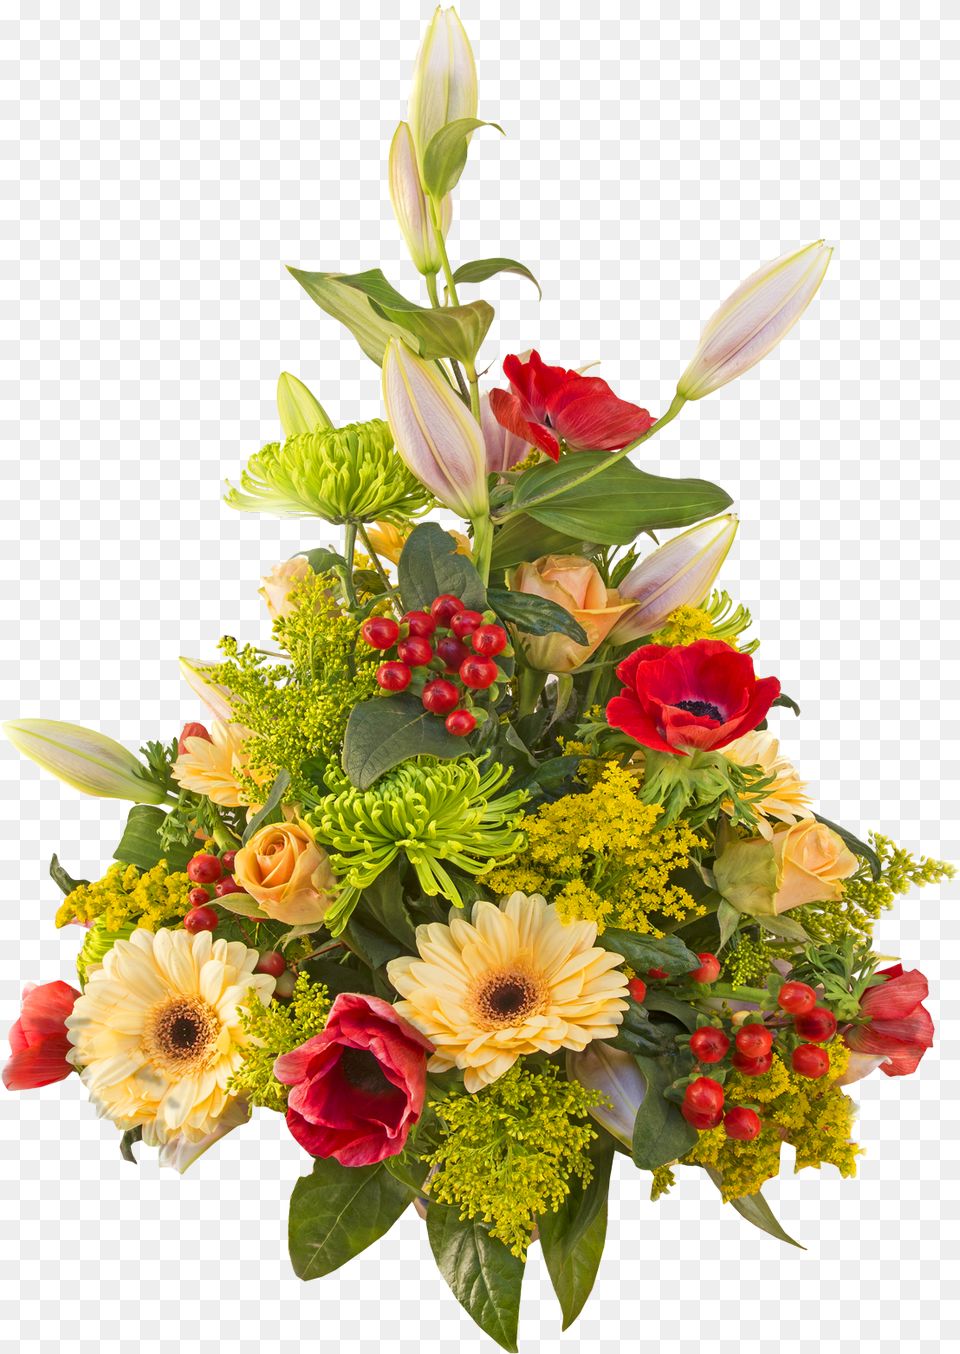 Bouquet Of Roses Hd Format Flower Bouquet, Art, Floral Design, Flower Arrangement, Flower Bouquet Png Image